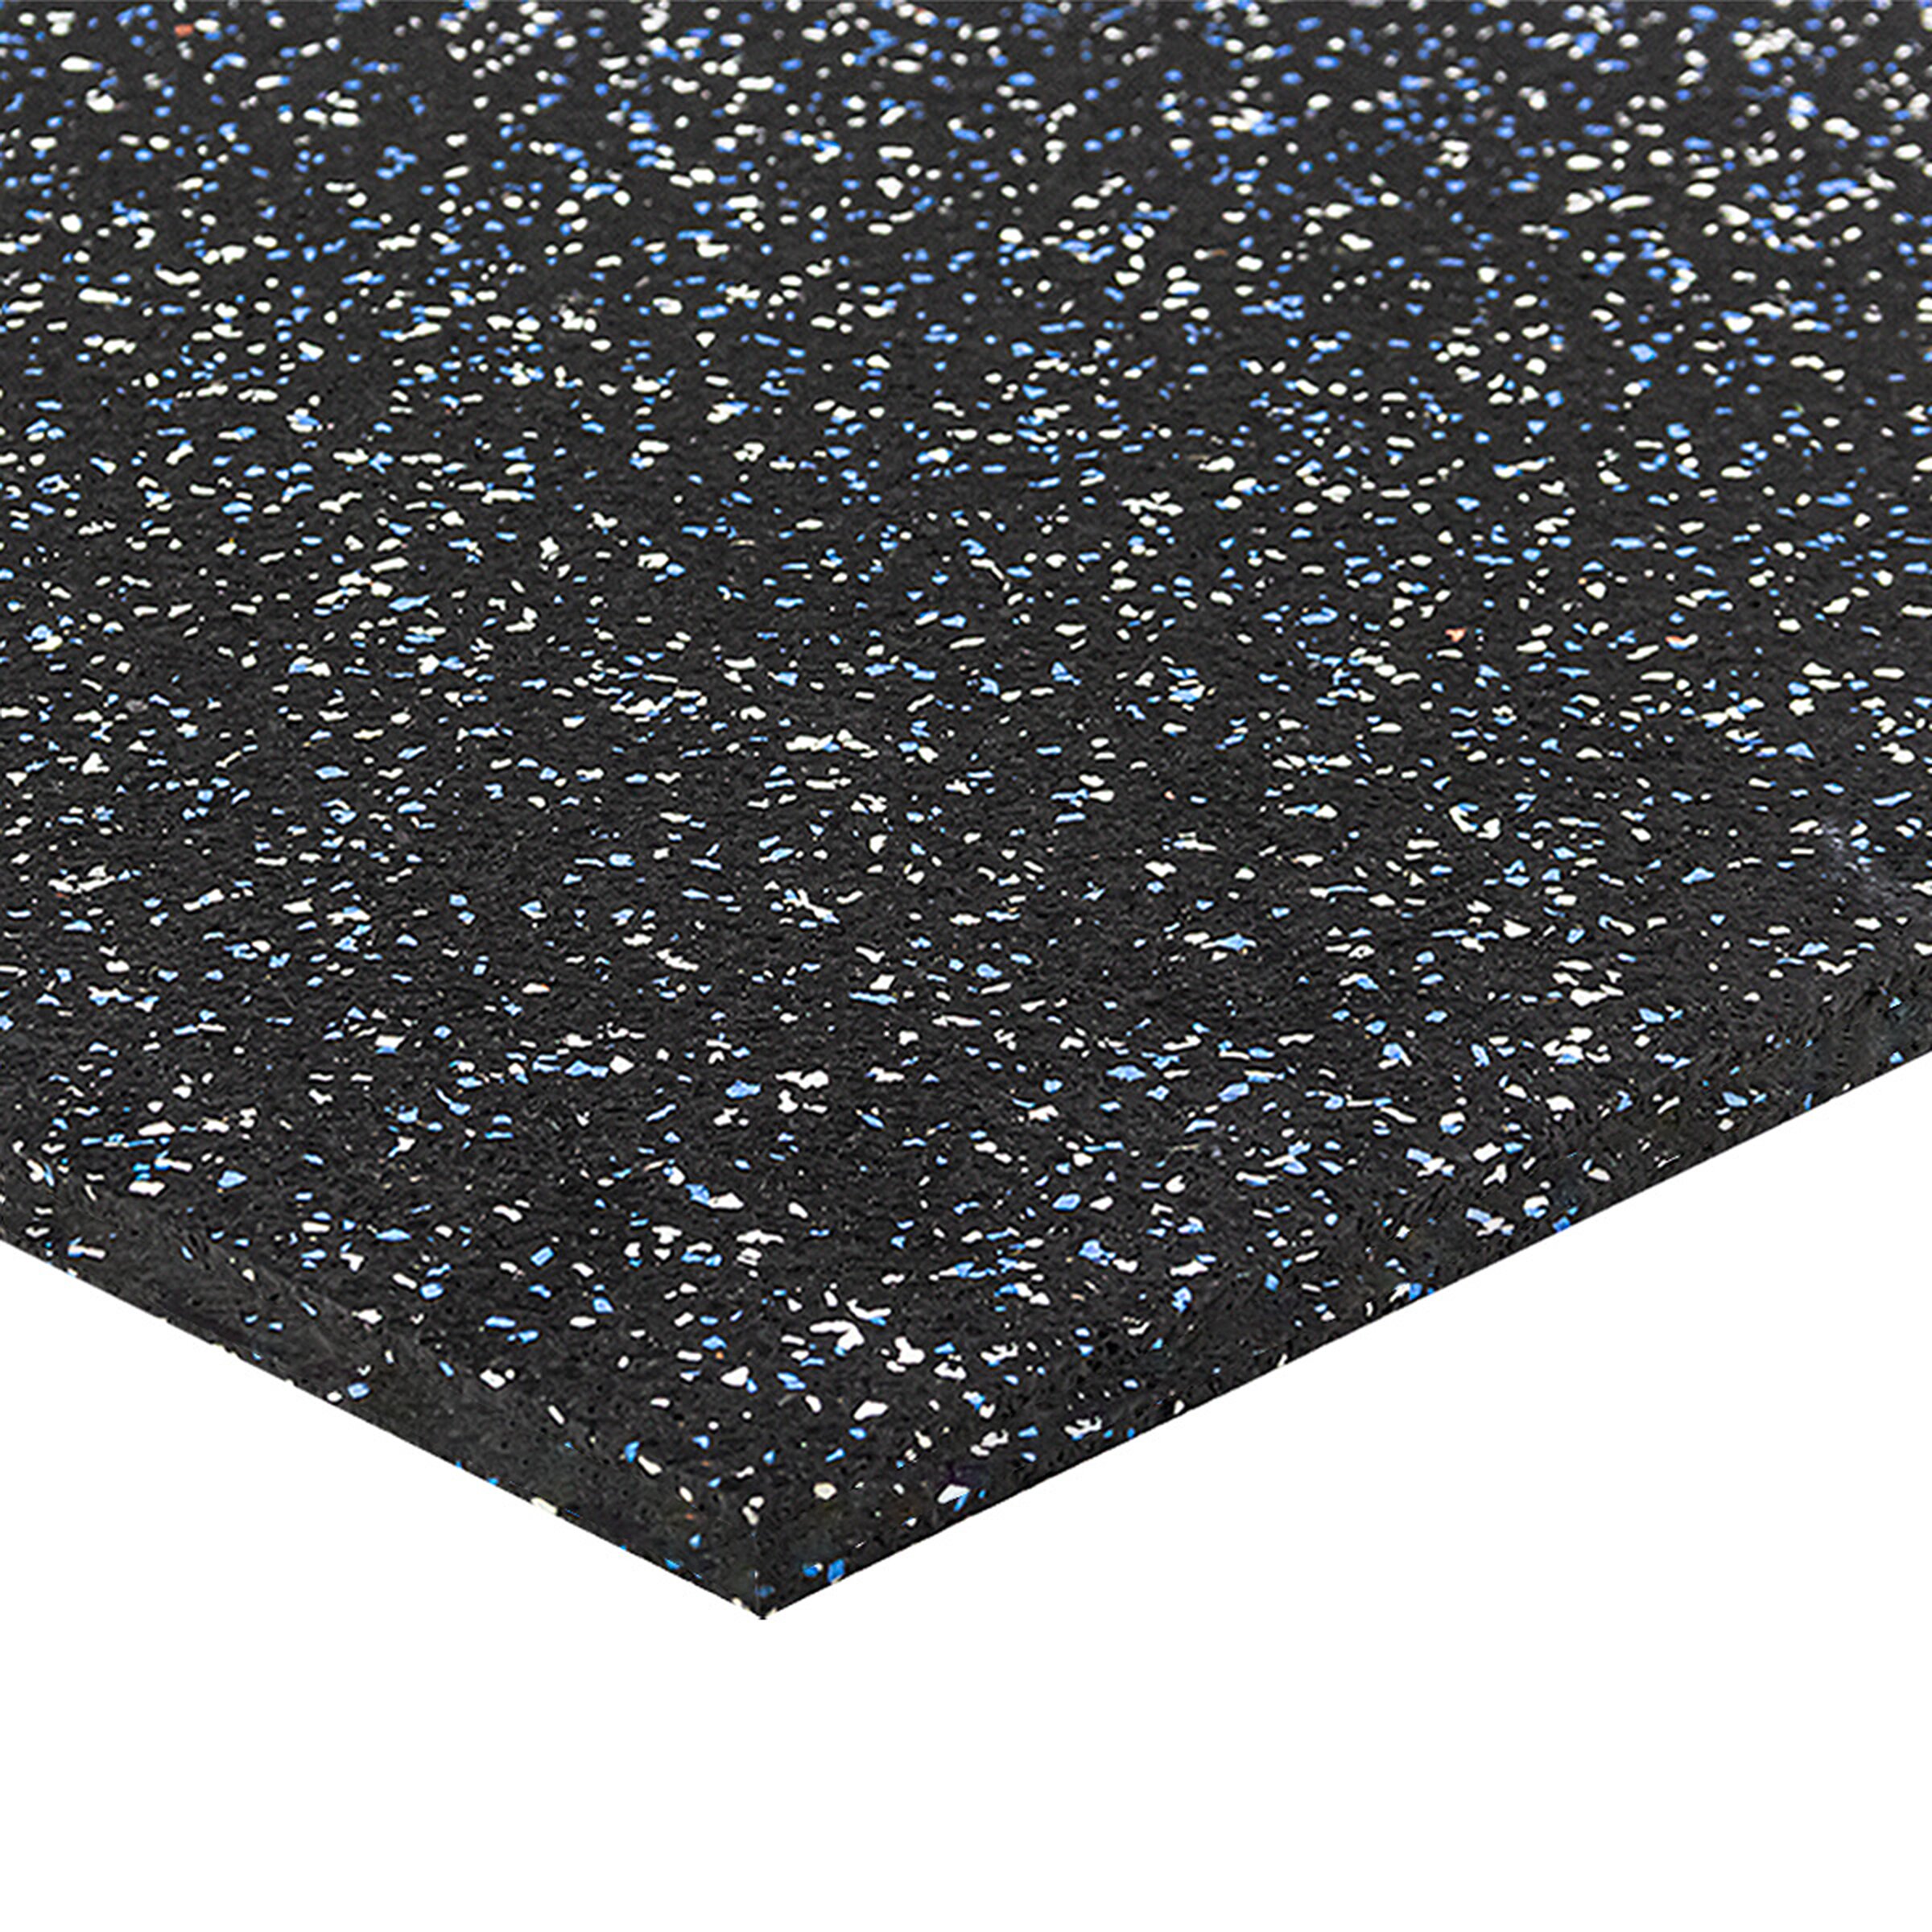 Černo-bílo-modrá podlahová guma (puzzle - roh) FLOMA FitFlo SF1050 - délka 100 cm, šířka 100 cm, výška 1,6 cm